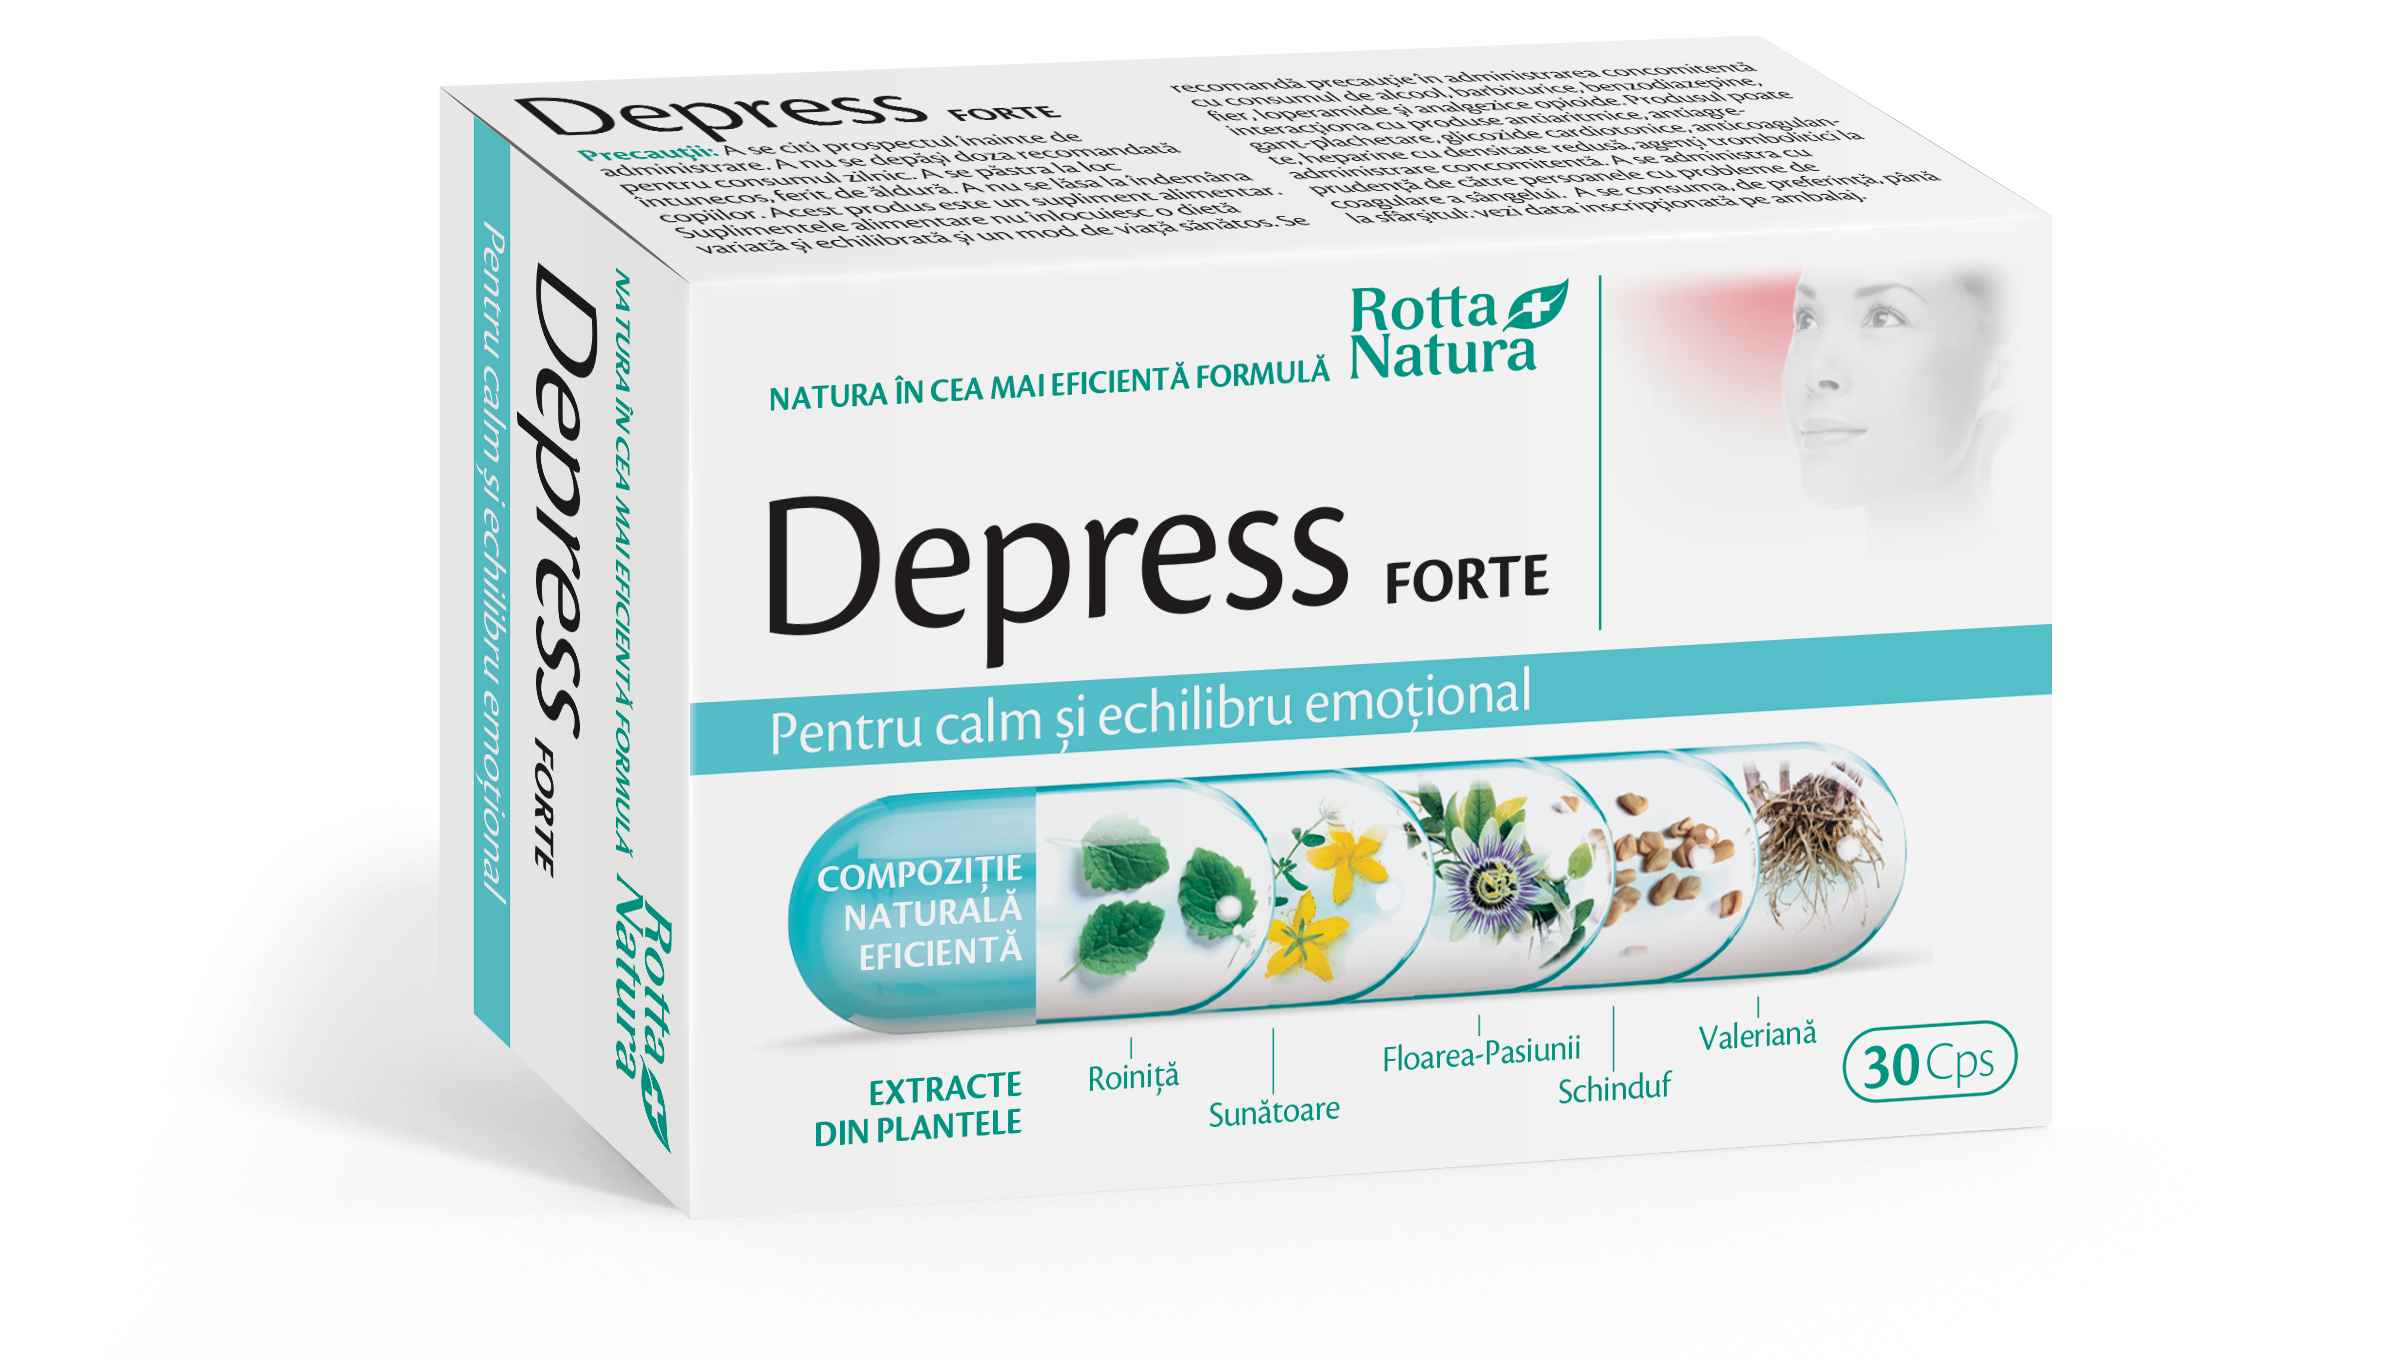 Antistres - Depress forte, 30 capsule, Rotta Natura, sinapis.ro